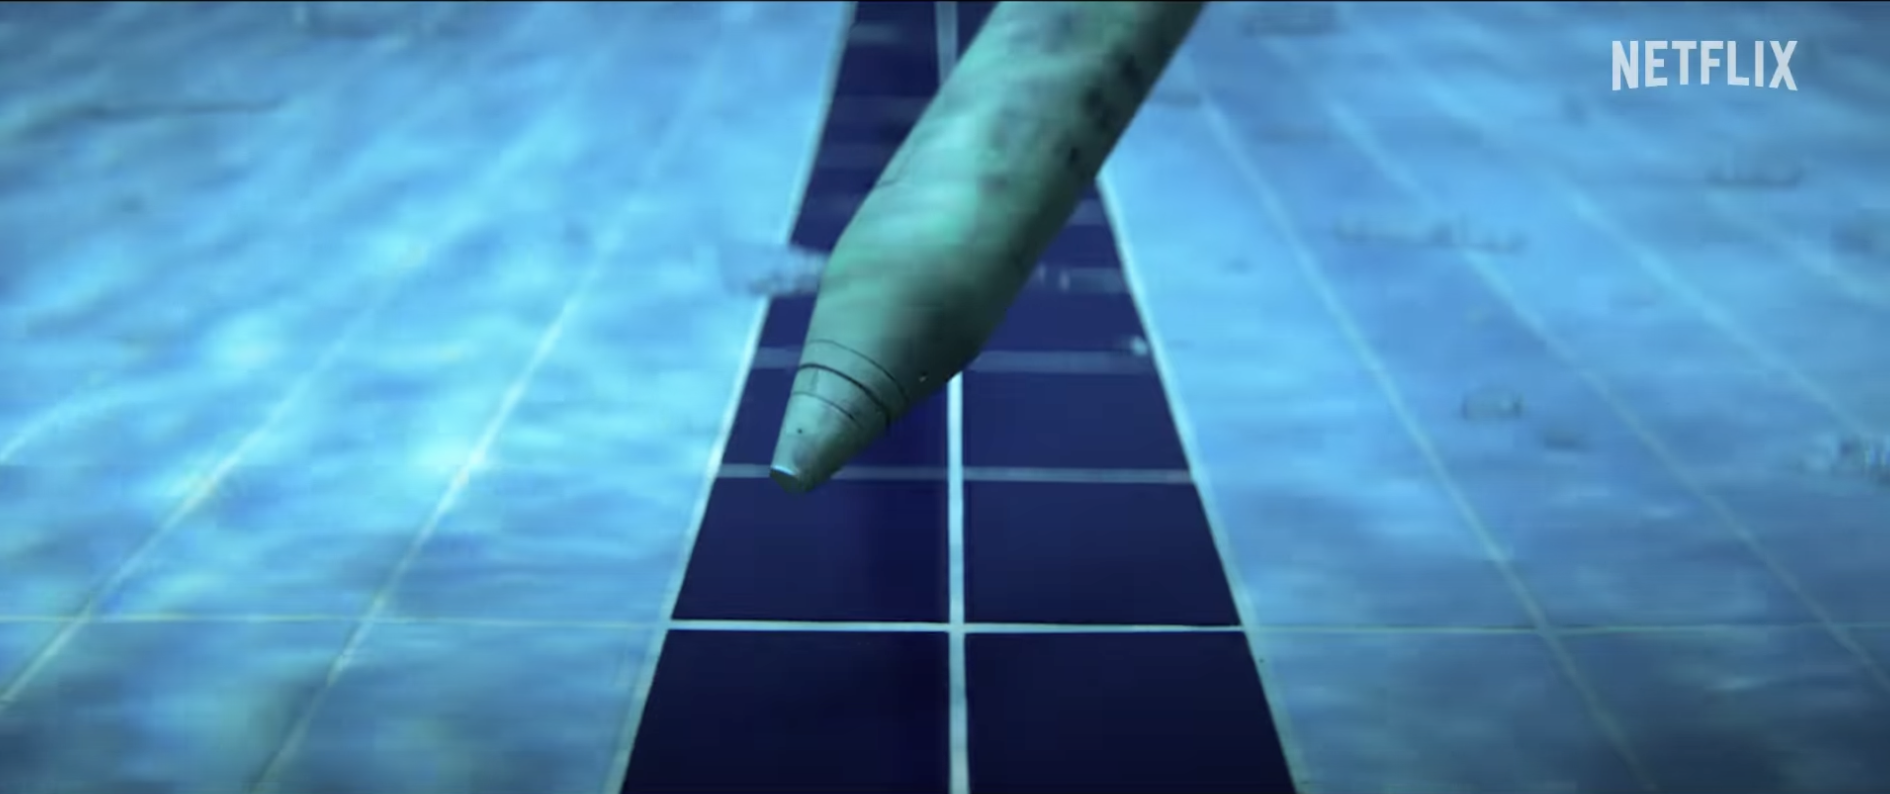 Netflix lancia il film biografico “The Swimmers”. Il trailer.